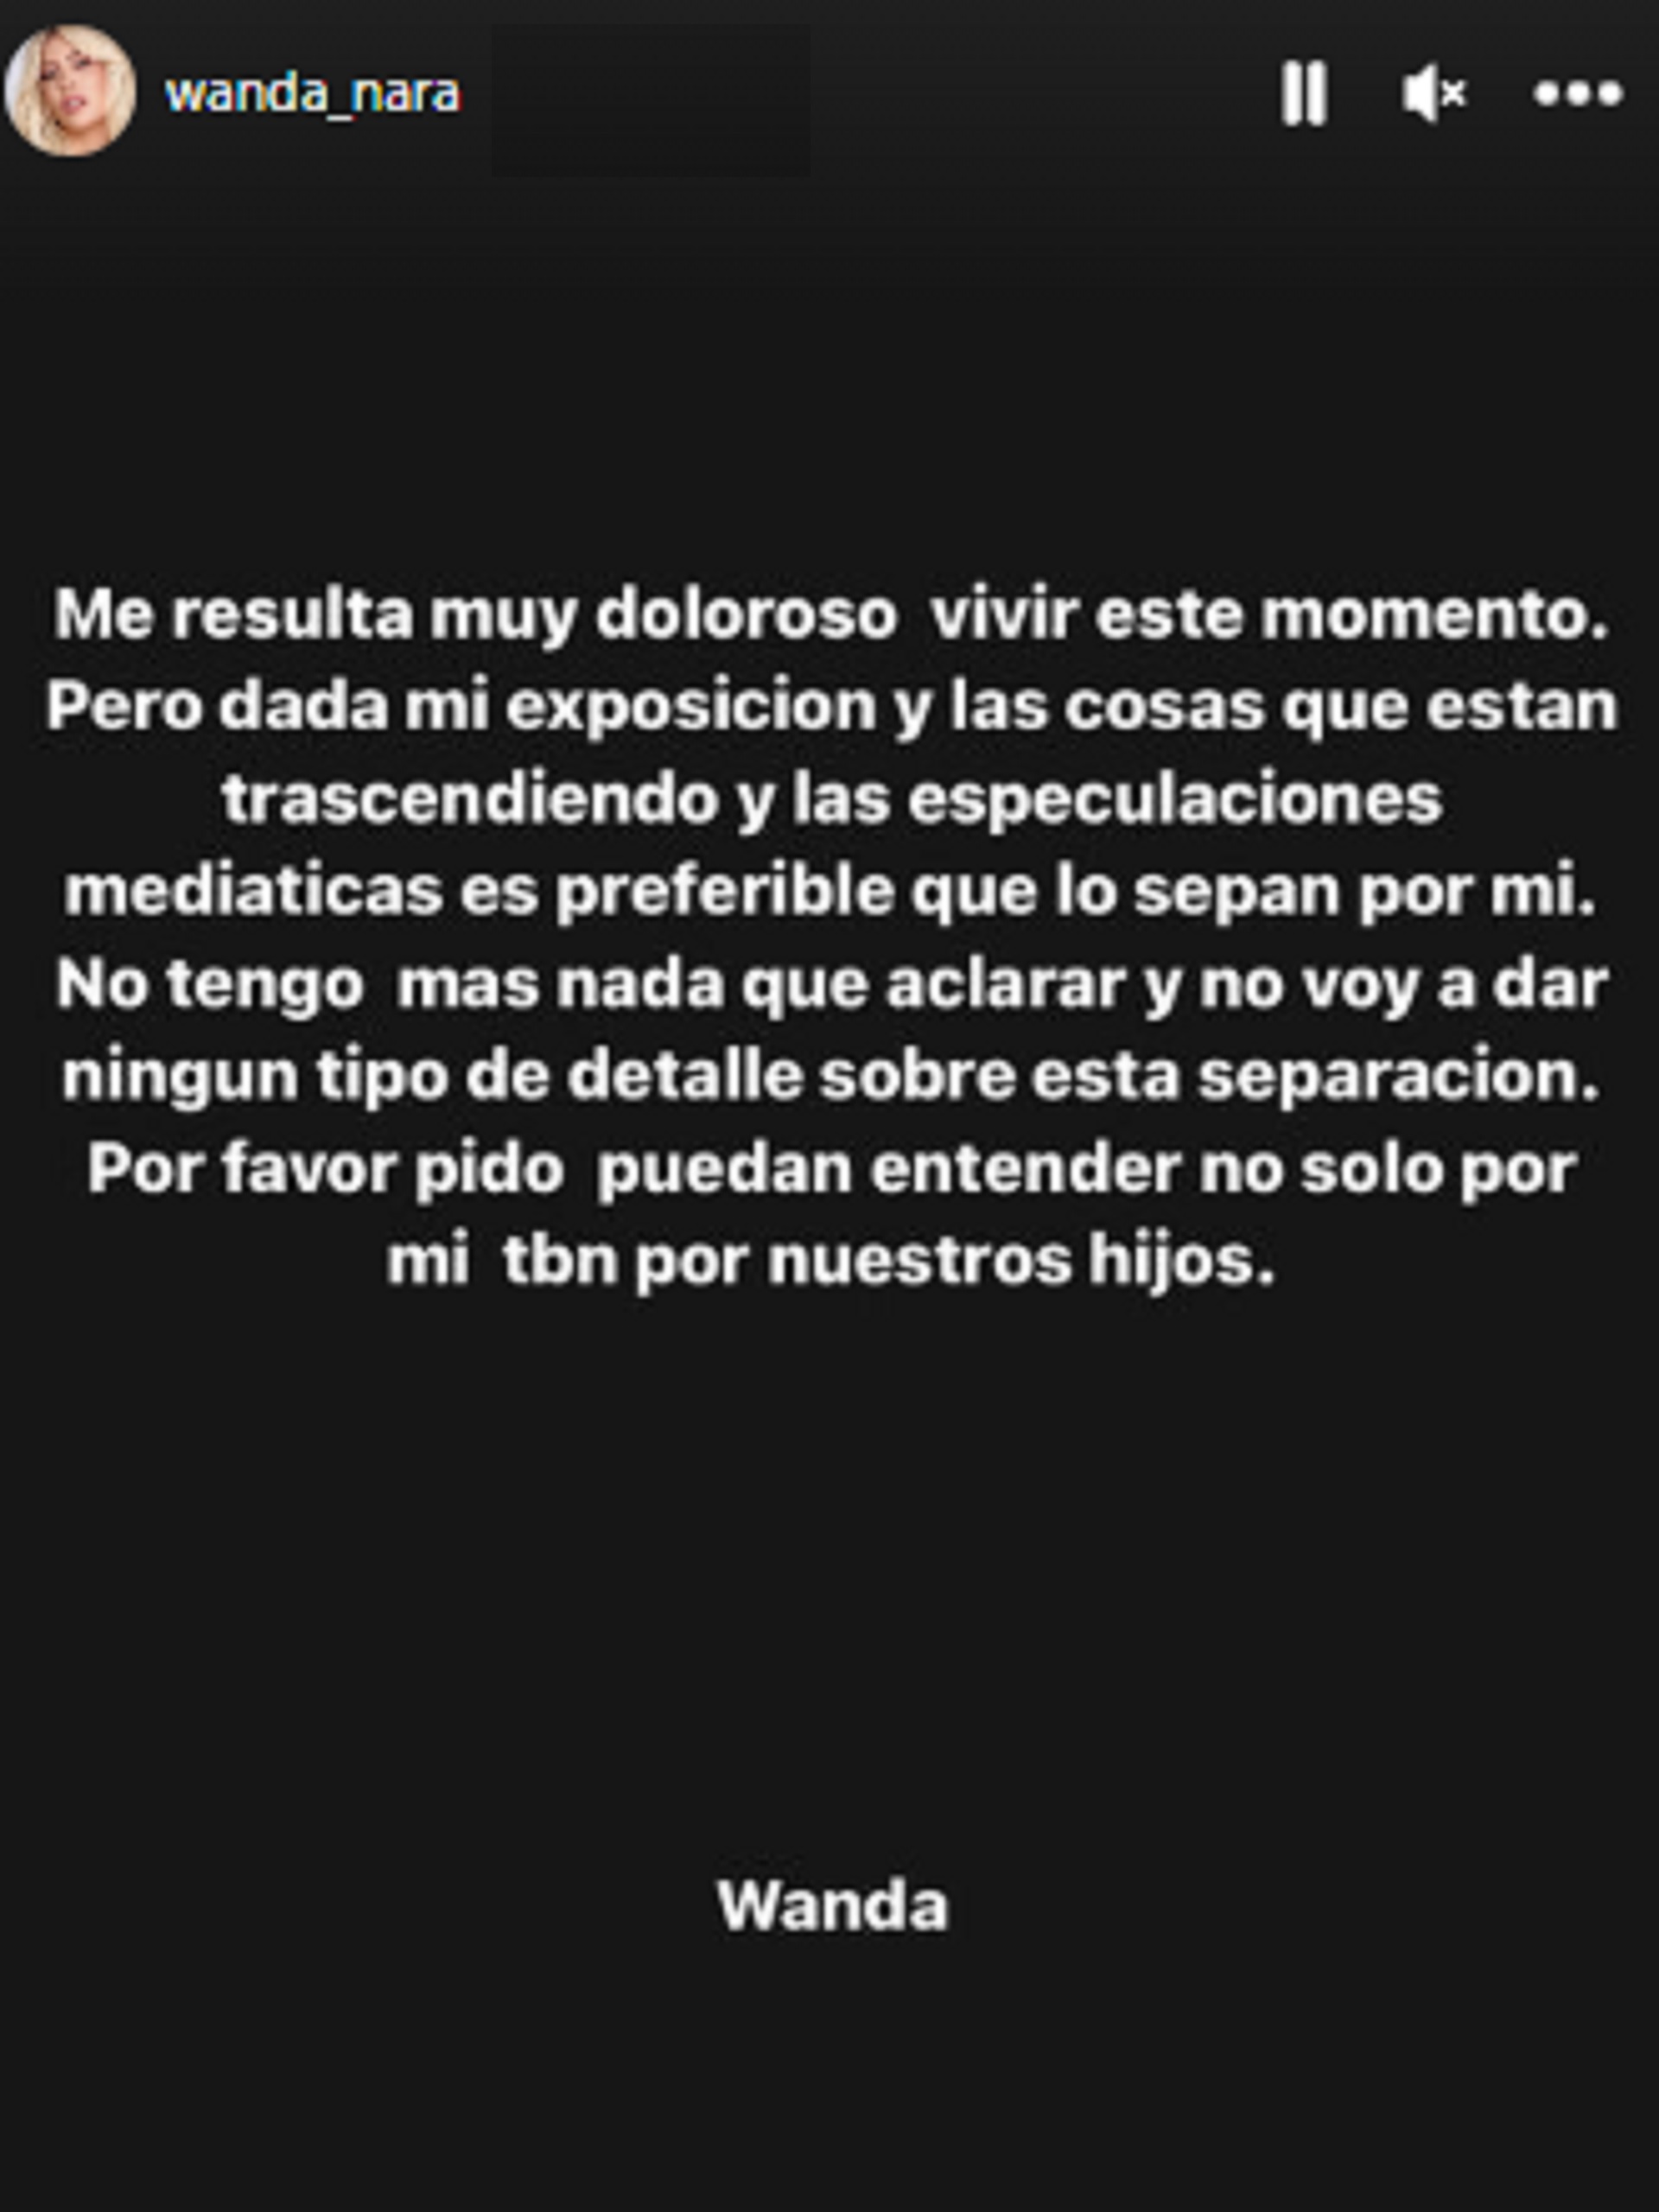 El comunicado de Wanda Nara sobre su separación